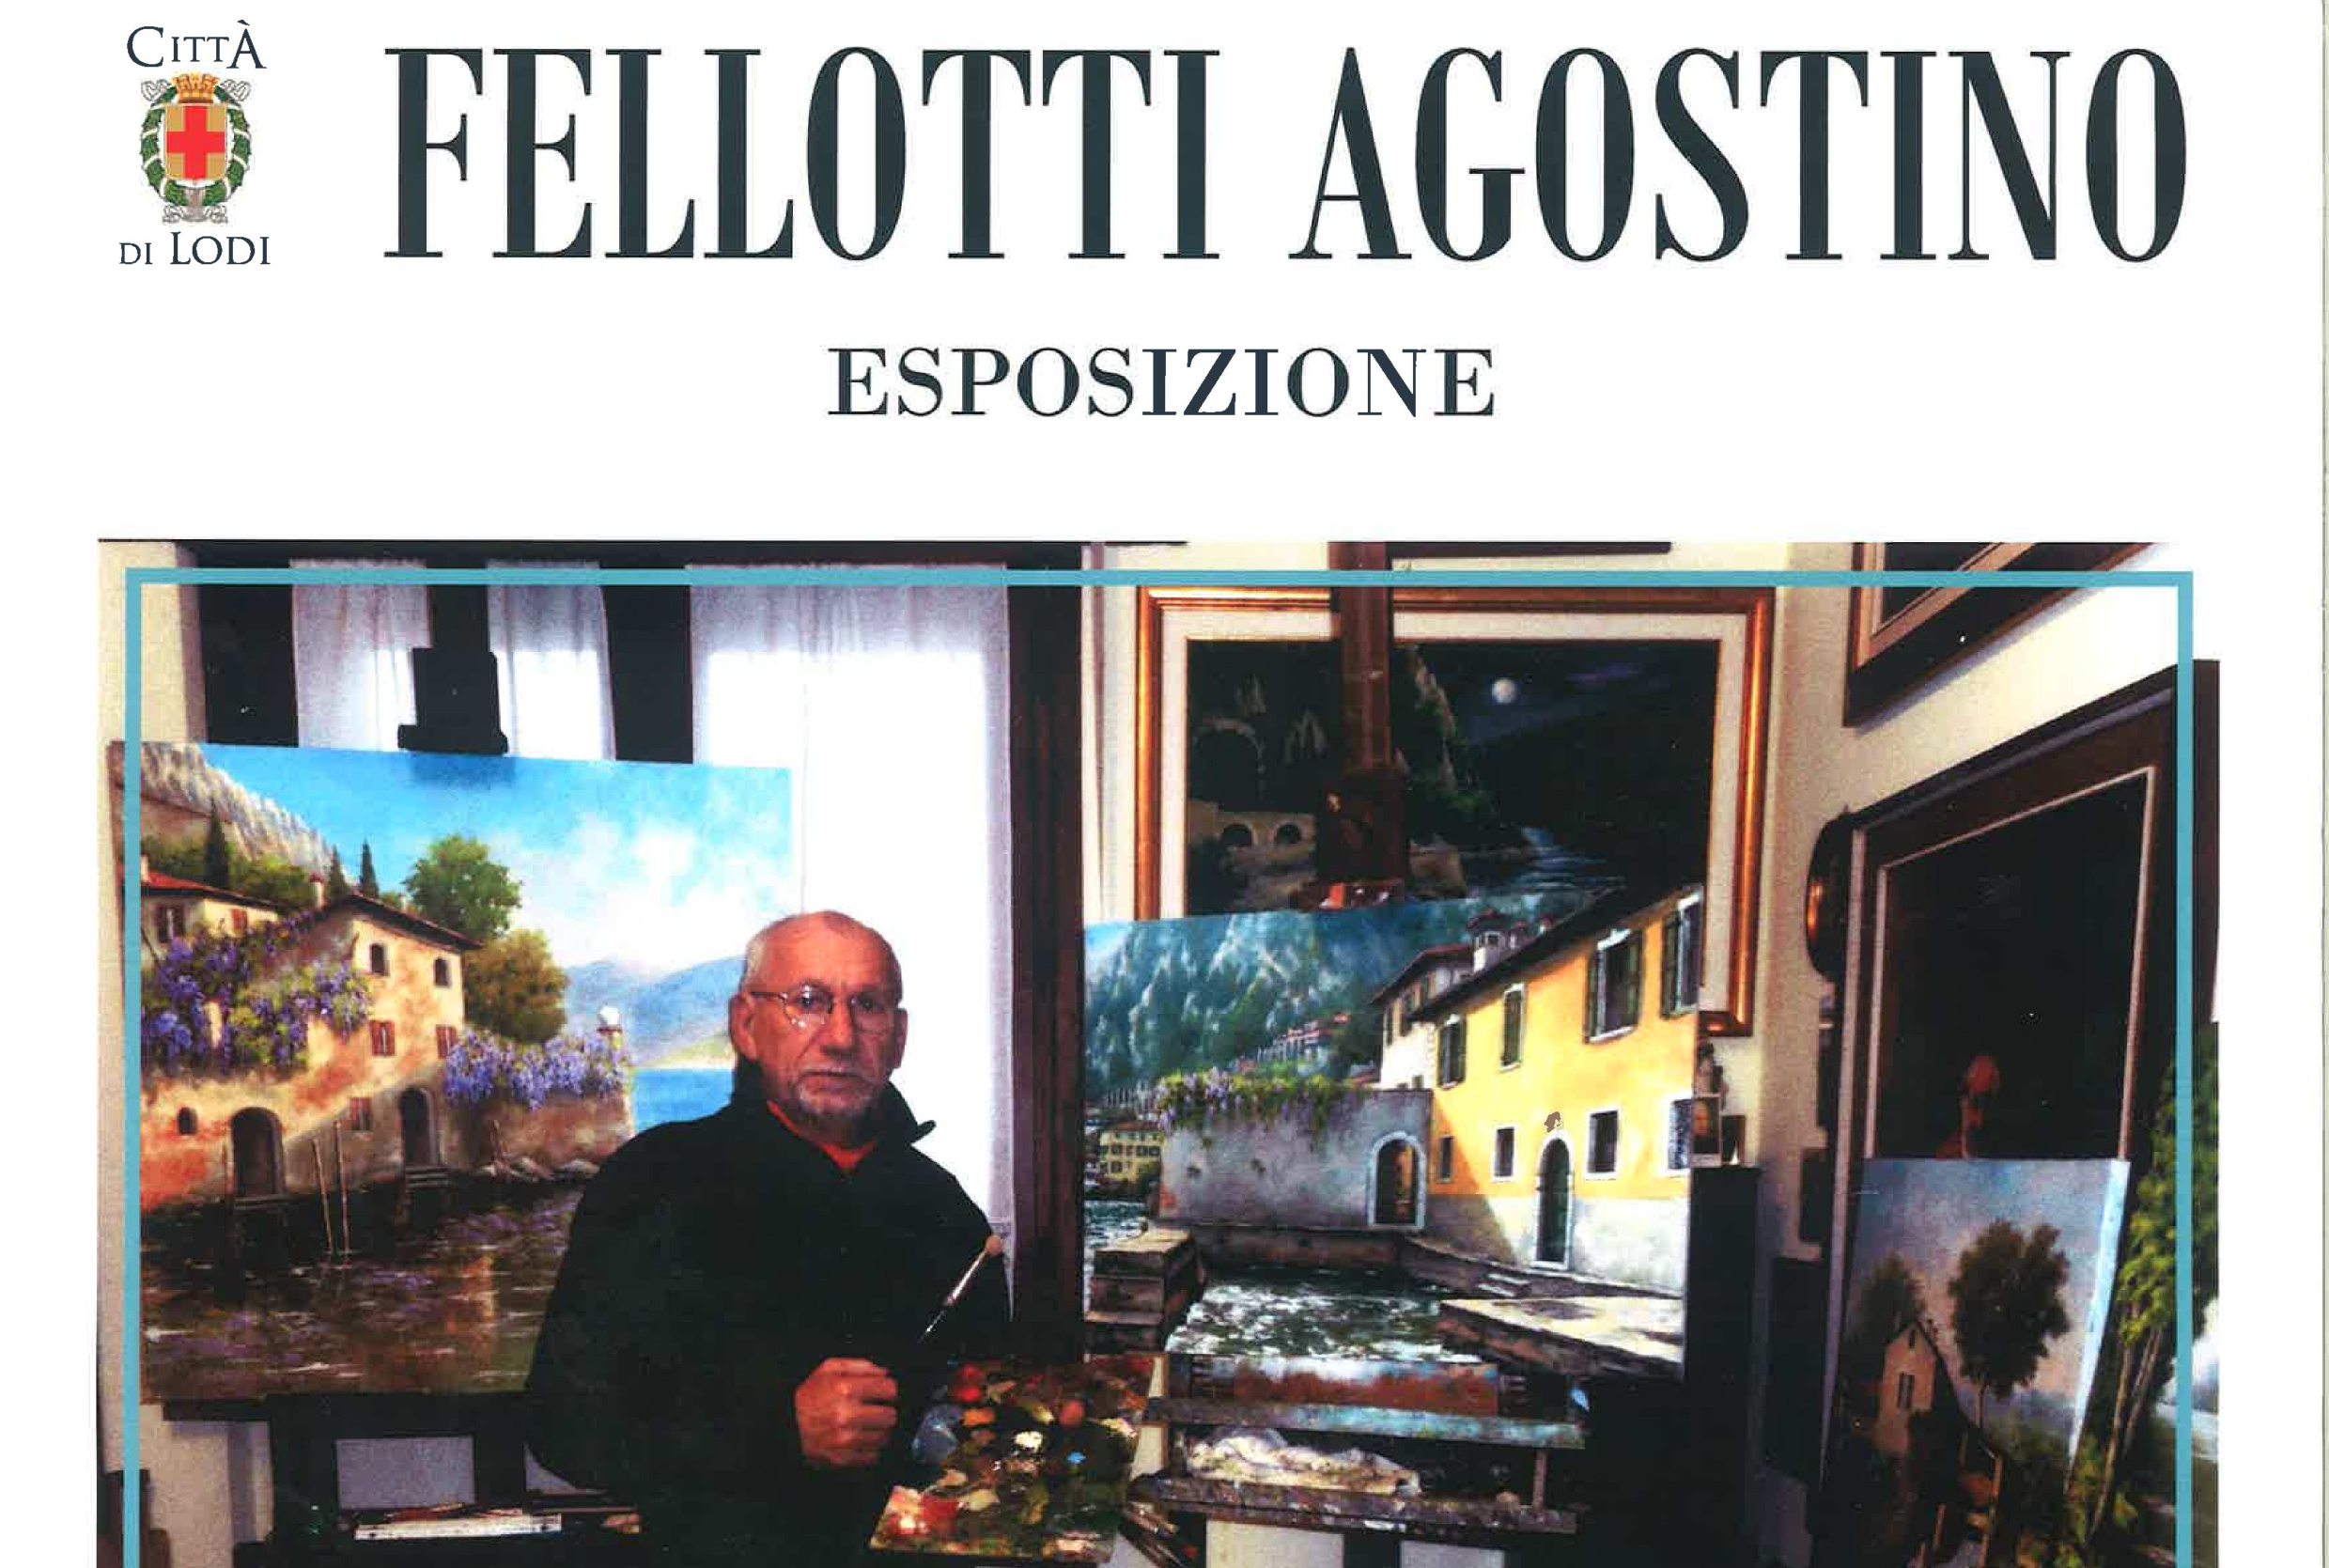 immagine dalla locandina con Fellotti nel suo atelier